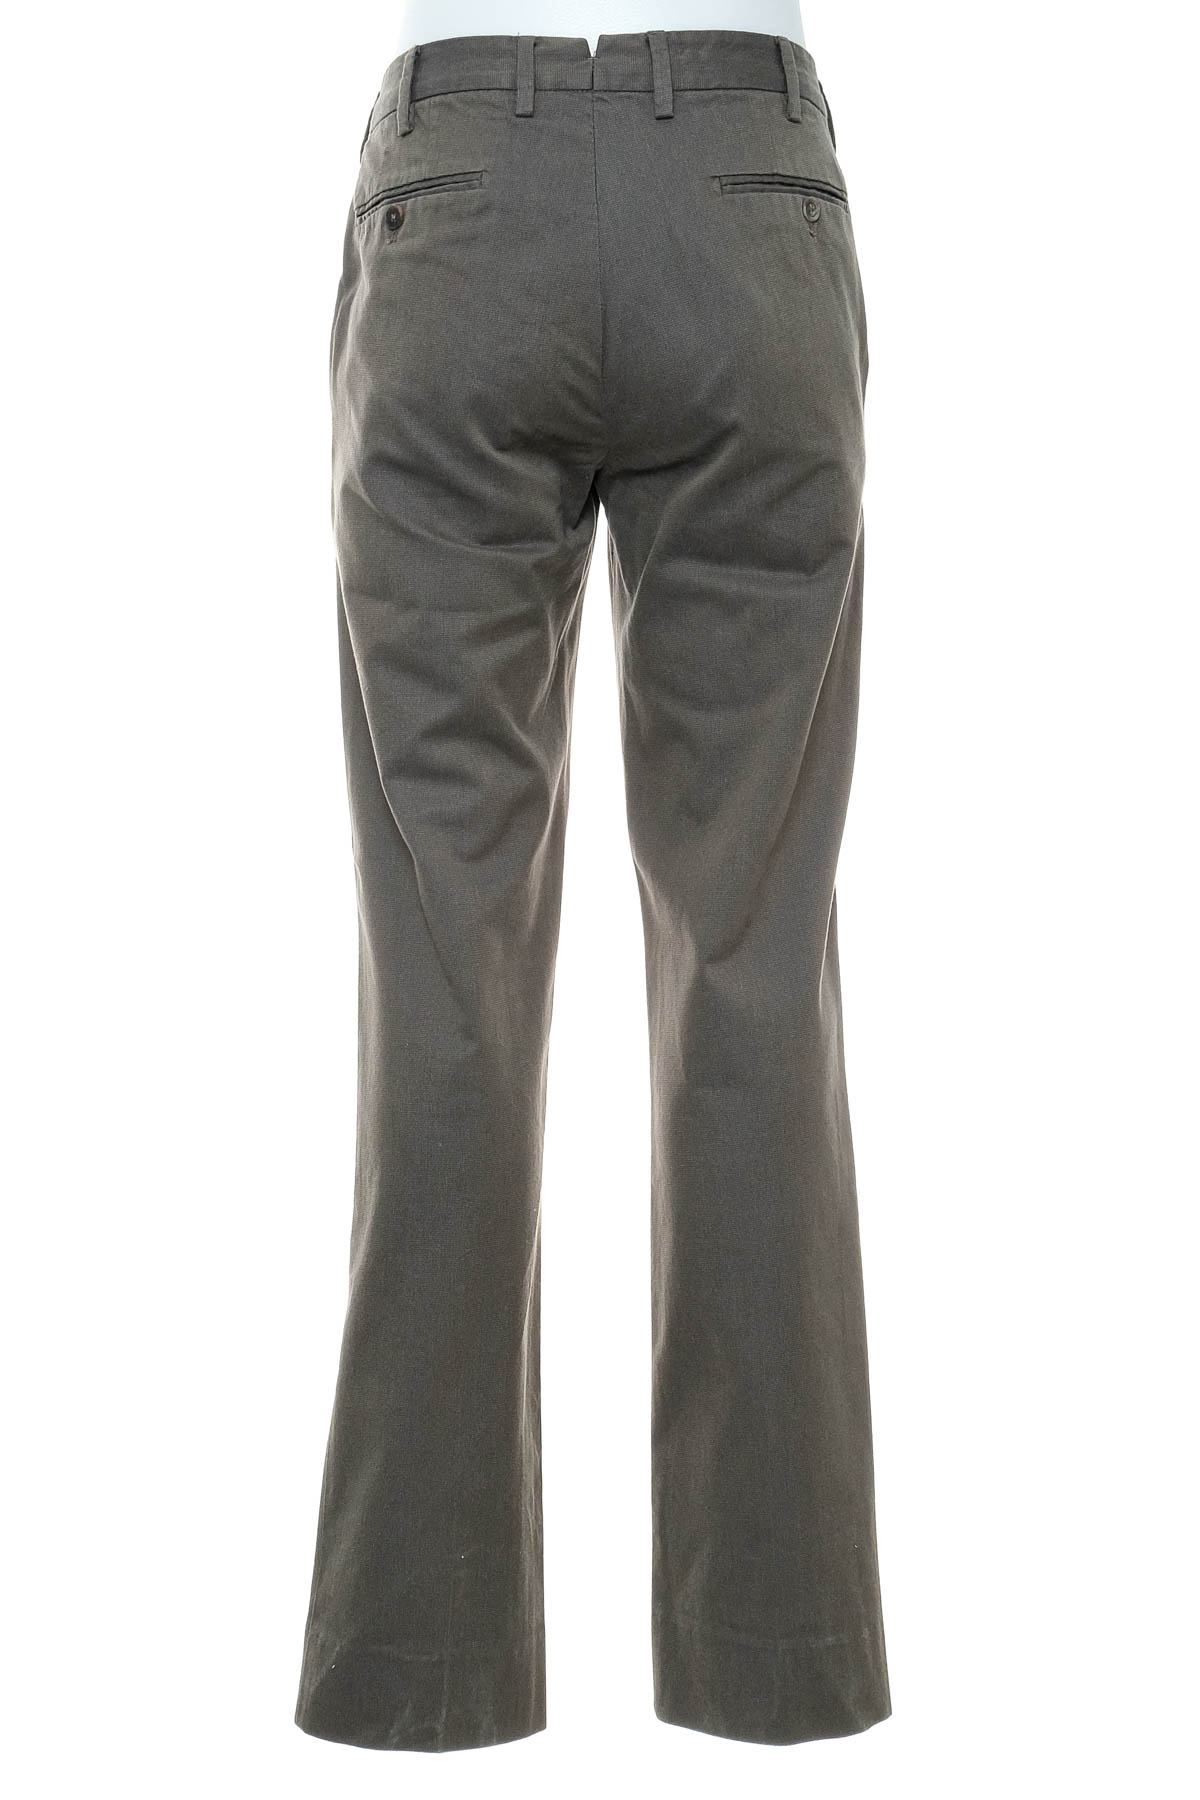 Pantalon pentru bărbați - Massimo Dutti - 1